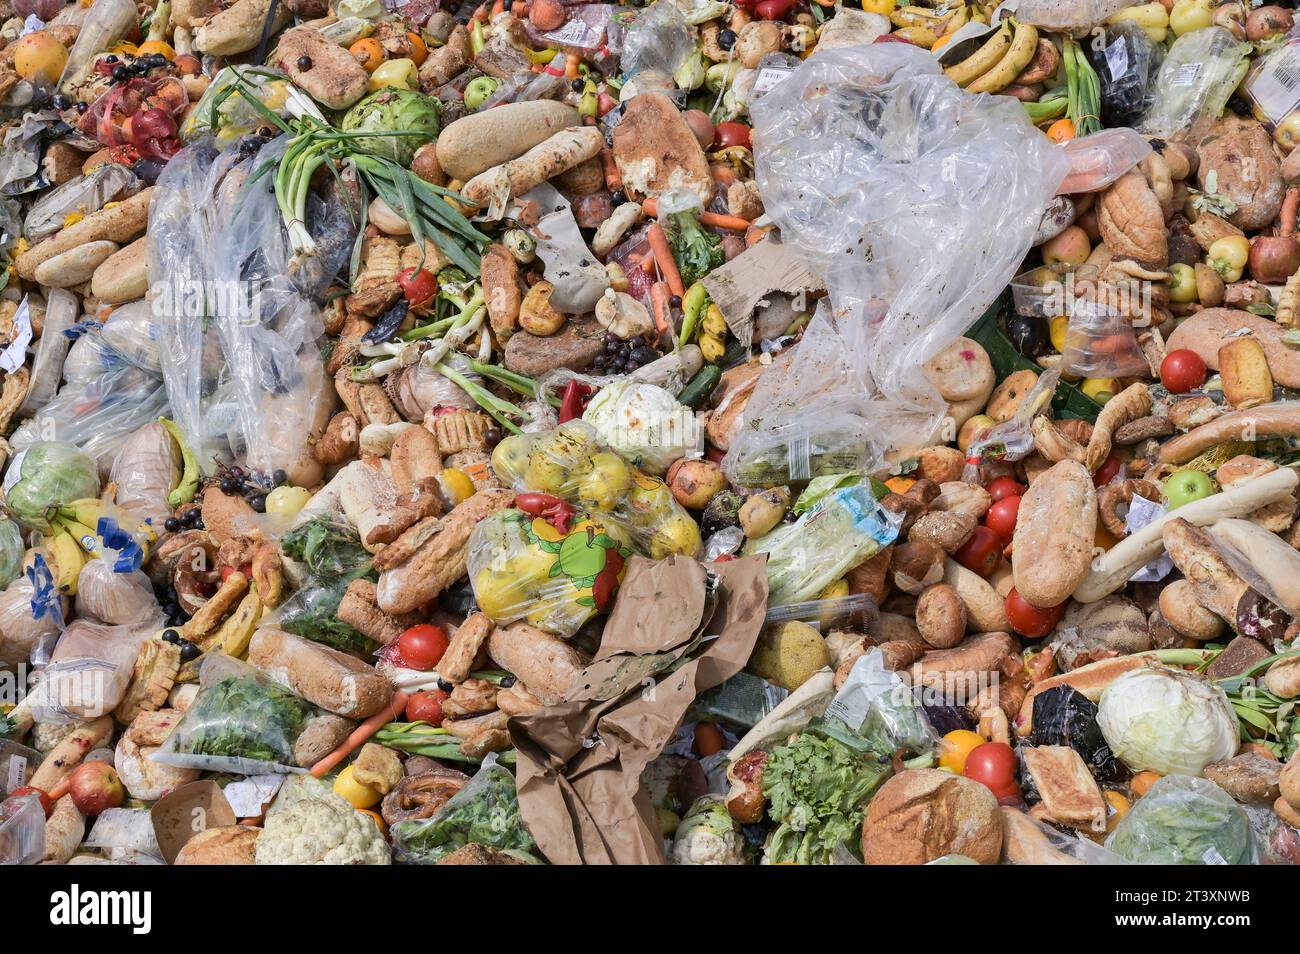 SERBIA, food waste from supermarket / SERBIEN, Lebensmittel Abfälle von Supermärkten Stock Photo